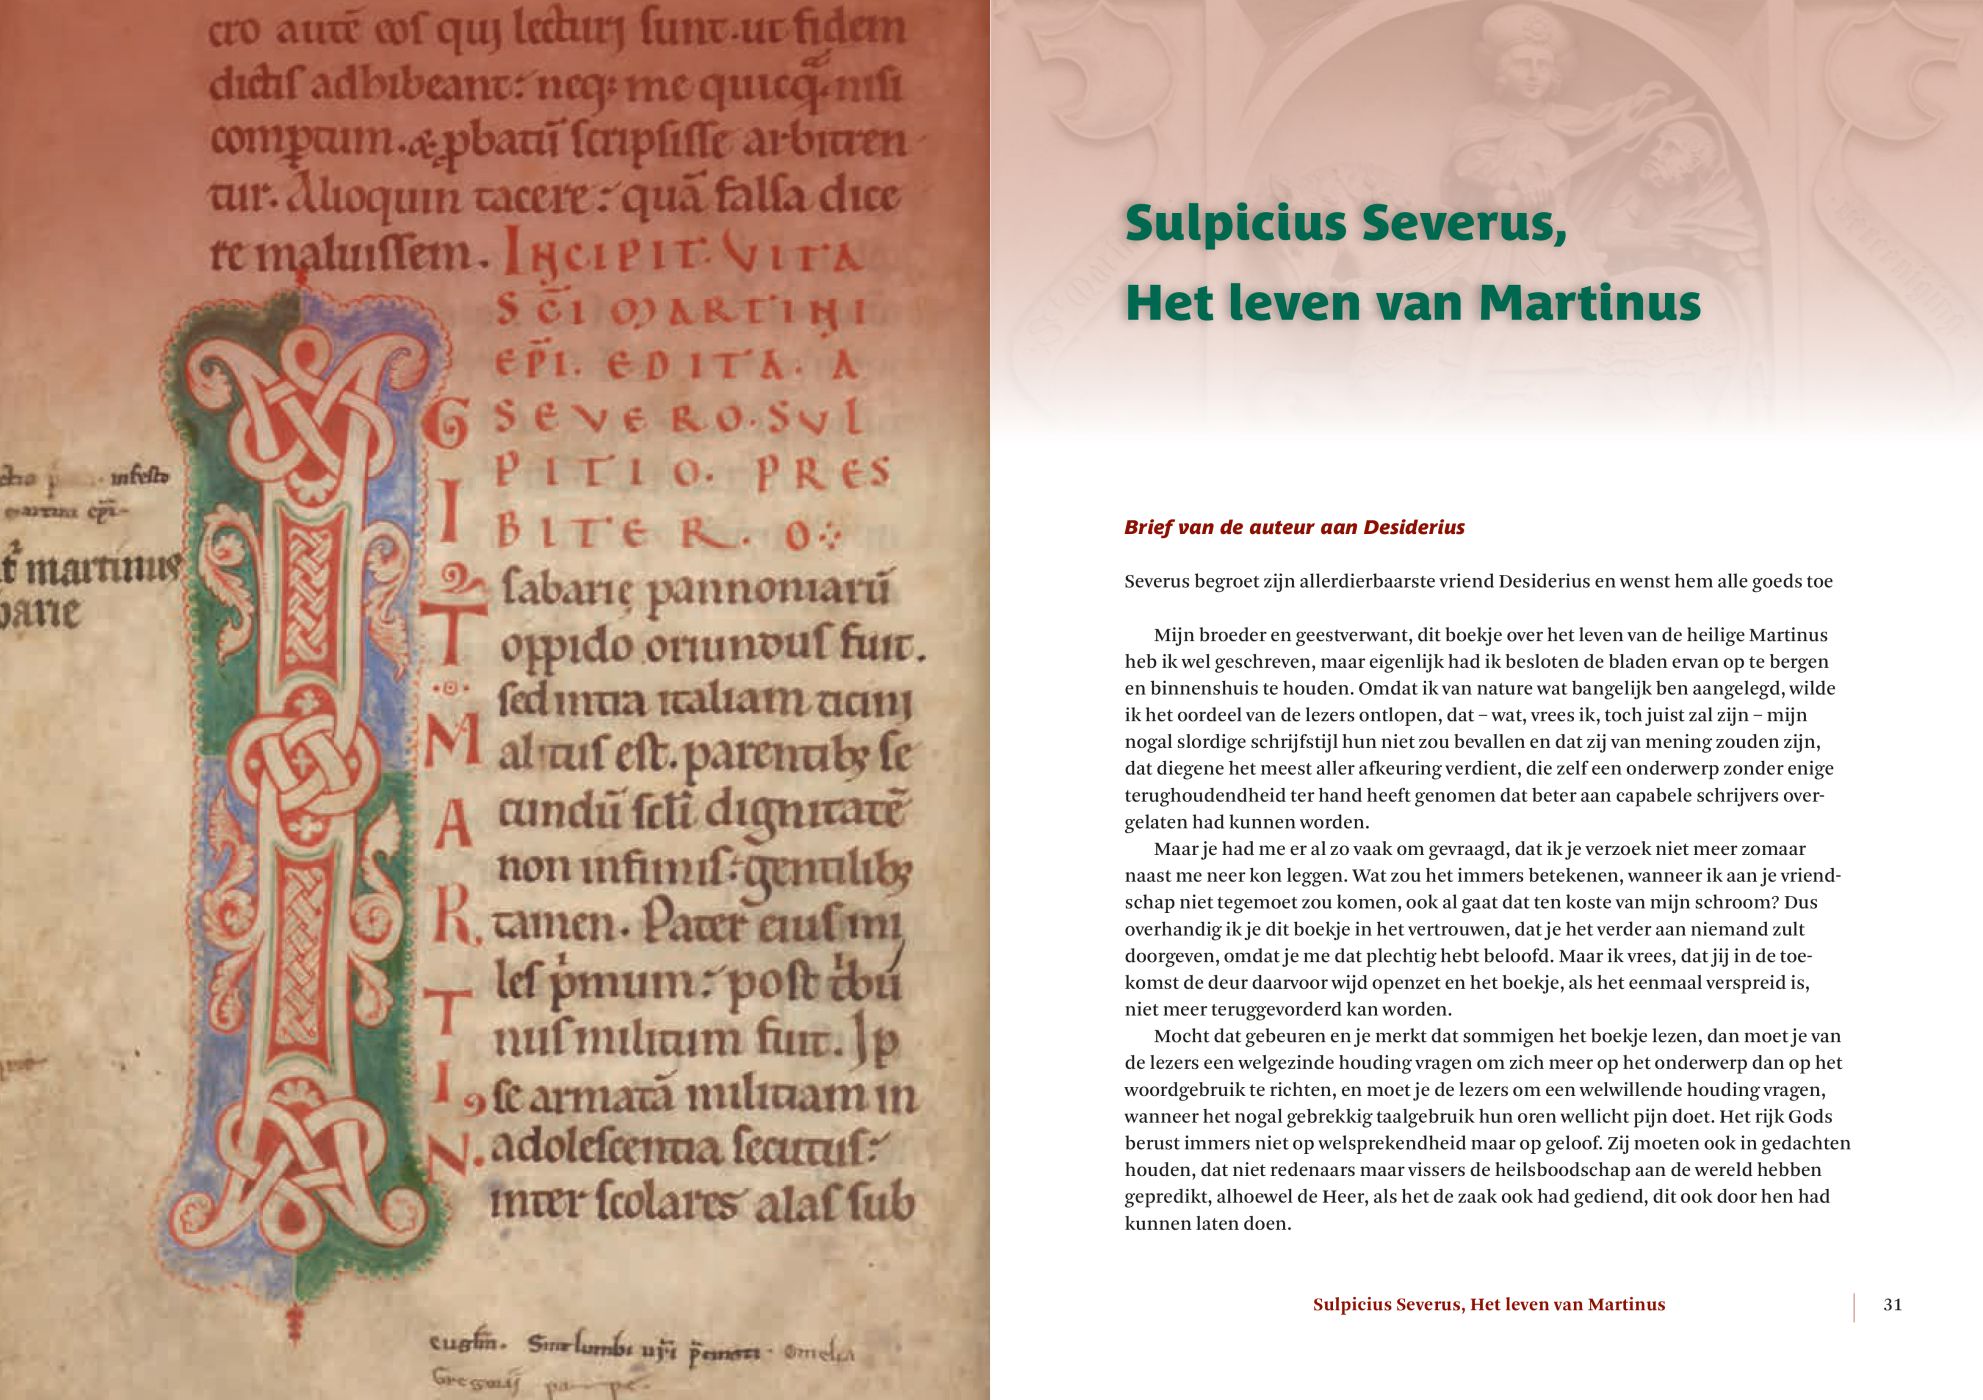 Inkijkexemplaar van het boek: <em>De levensweg van Martinus van Tours. Volgens Sulpicius Severus en Gregorius van Tours</em> - © Uitgeverij Matrijs